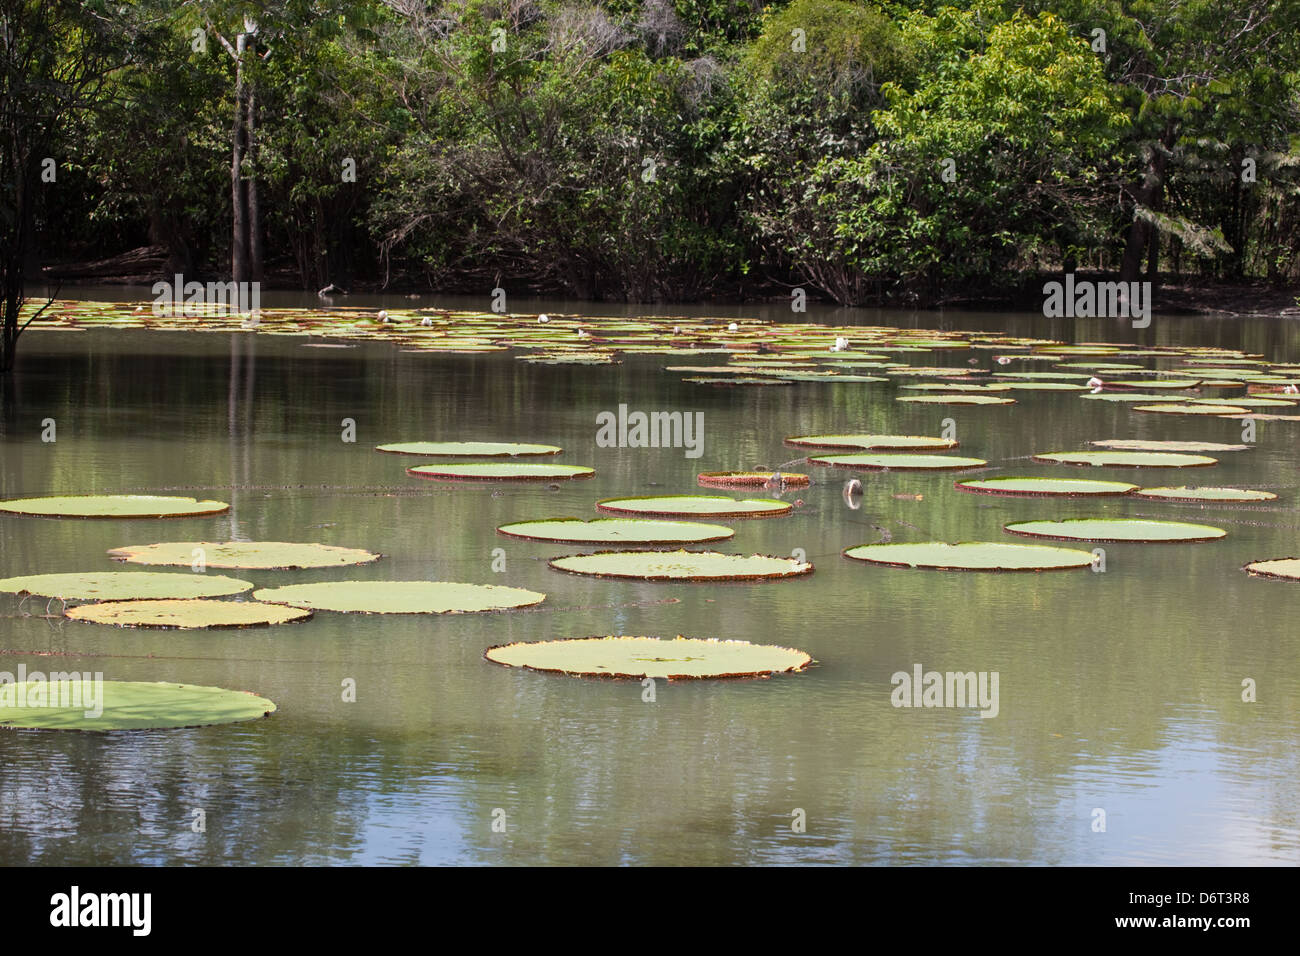 Riesen Waterlily (Victoria Amazonica). In Becken unter Anliegerstaaten Wald wachsen.  Fisch. Guy Stockfoto